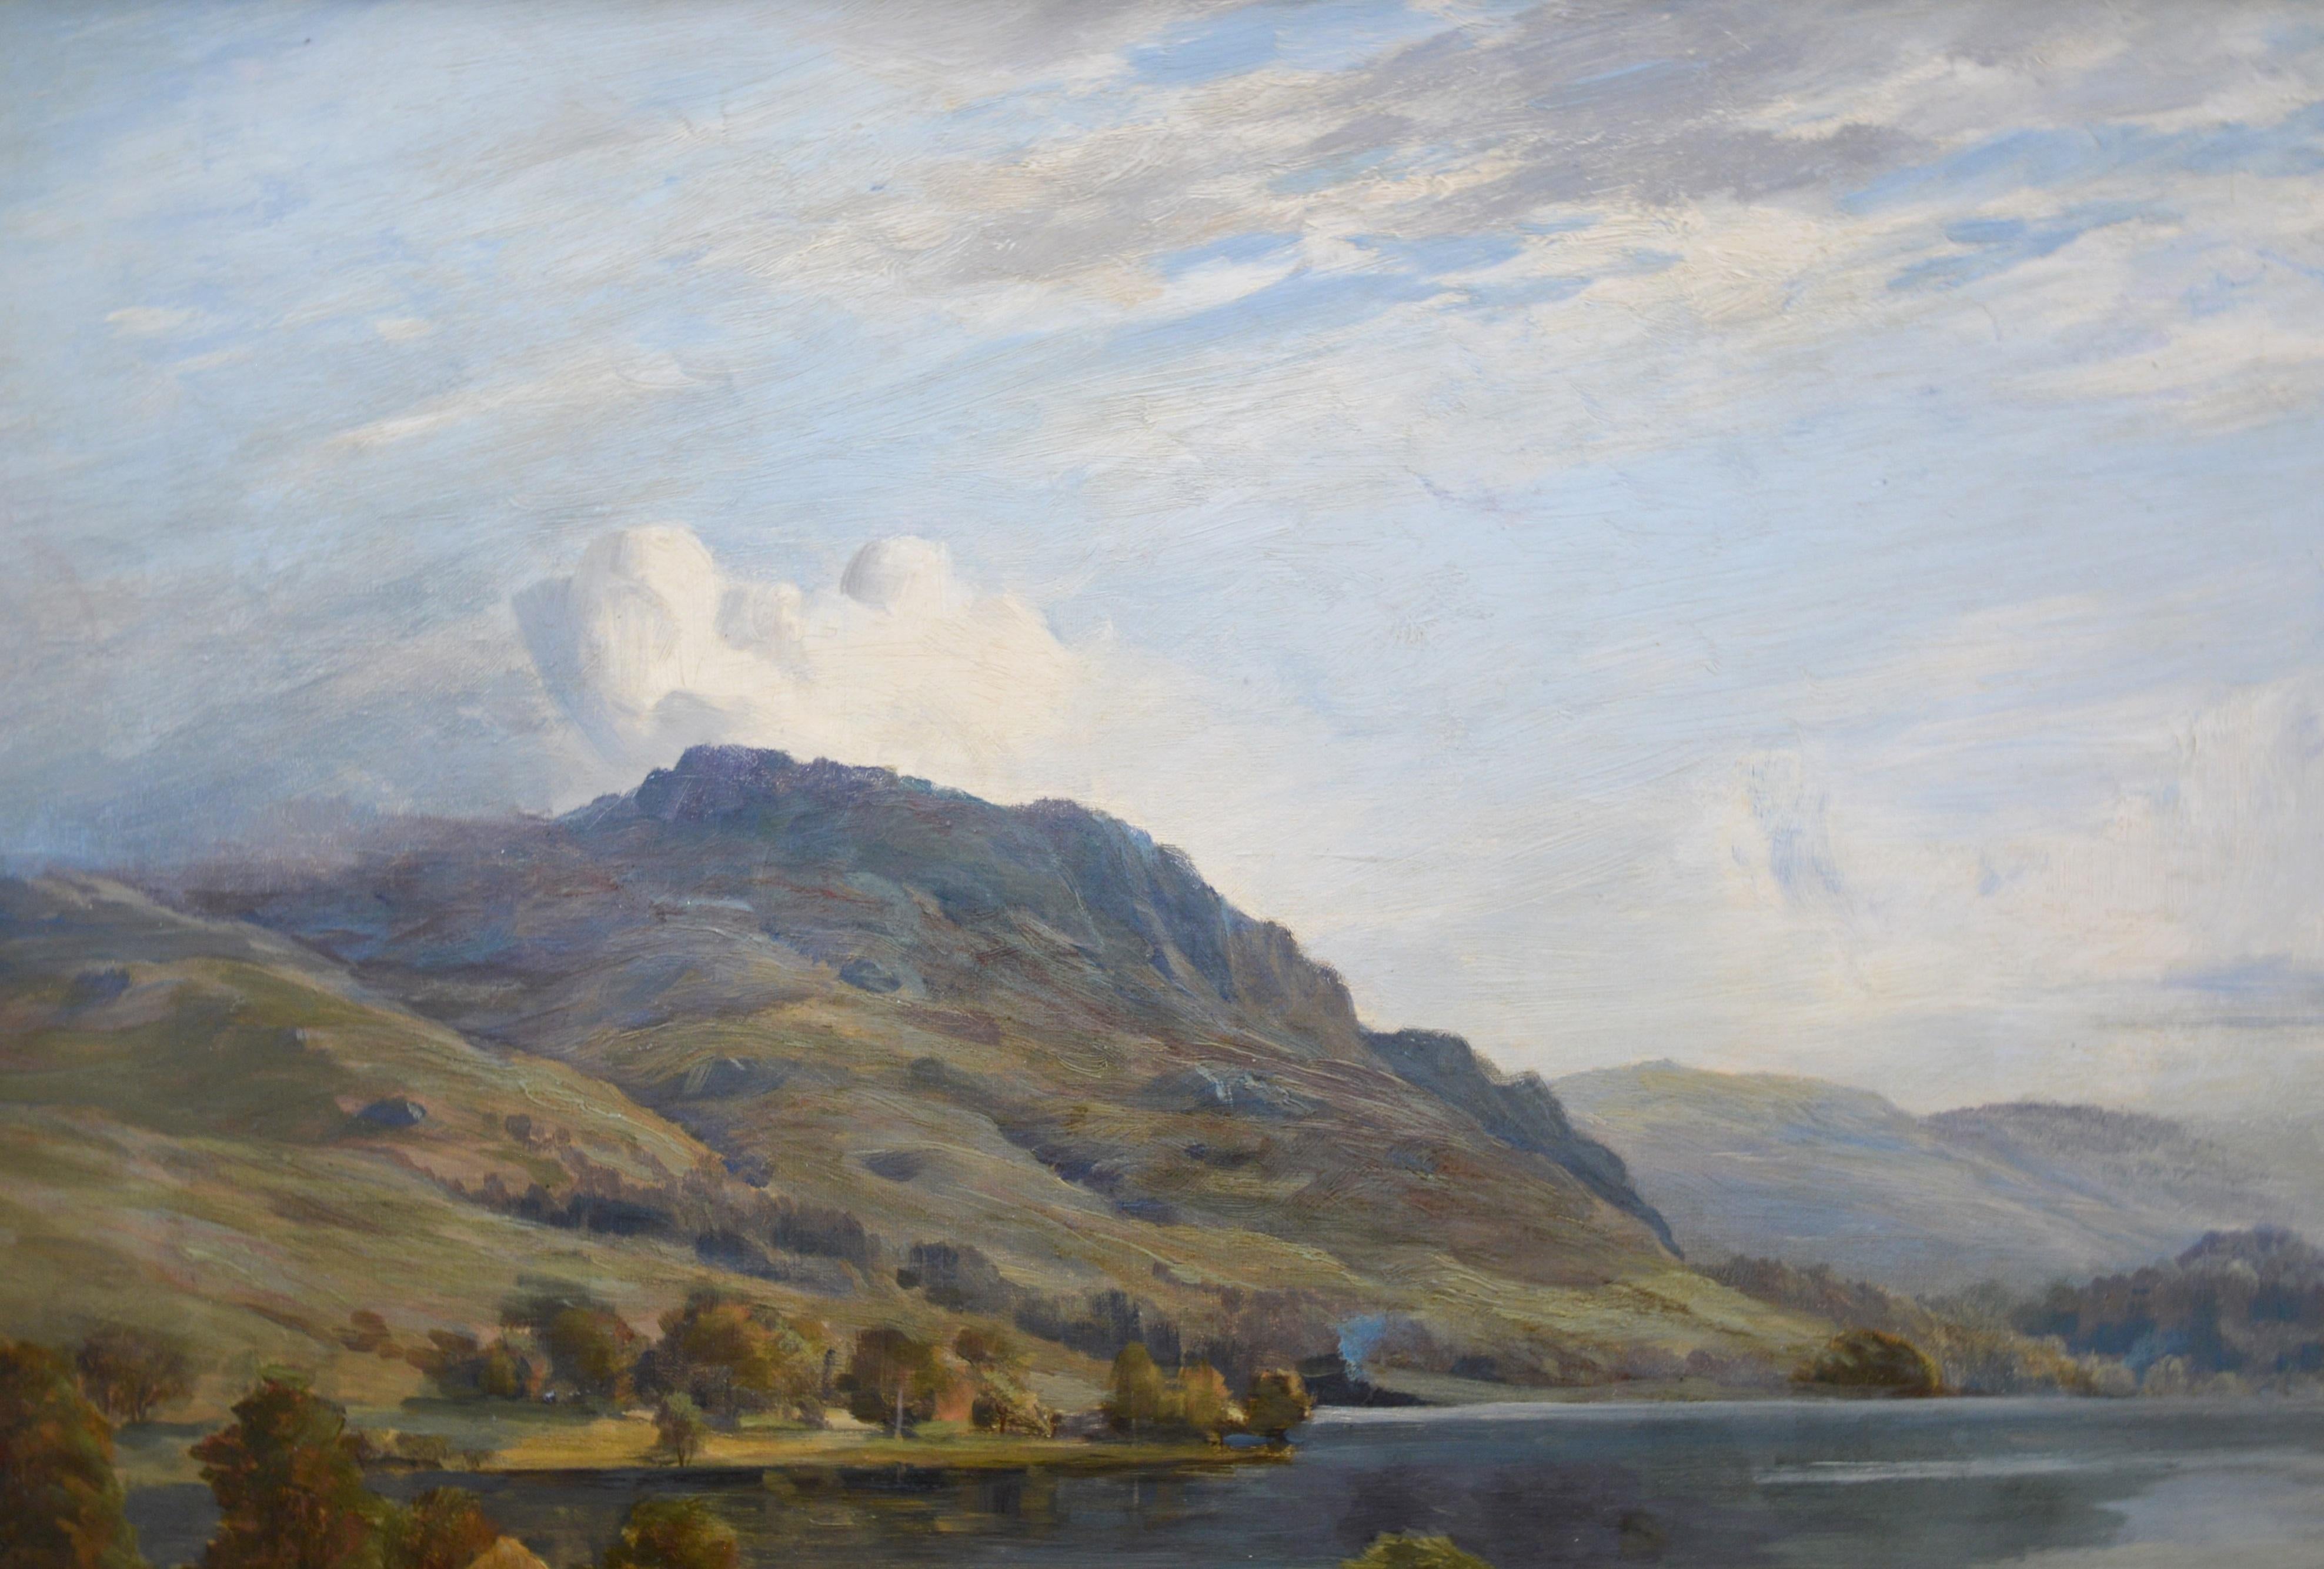 Loch Ard from Aberfoyle - Paysage écossais du 19ème siècle - Peinture à l'huile 1